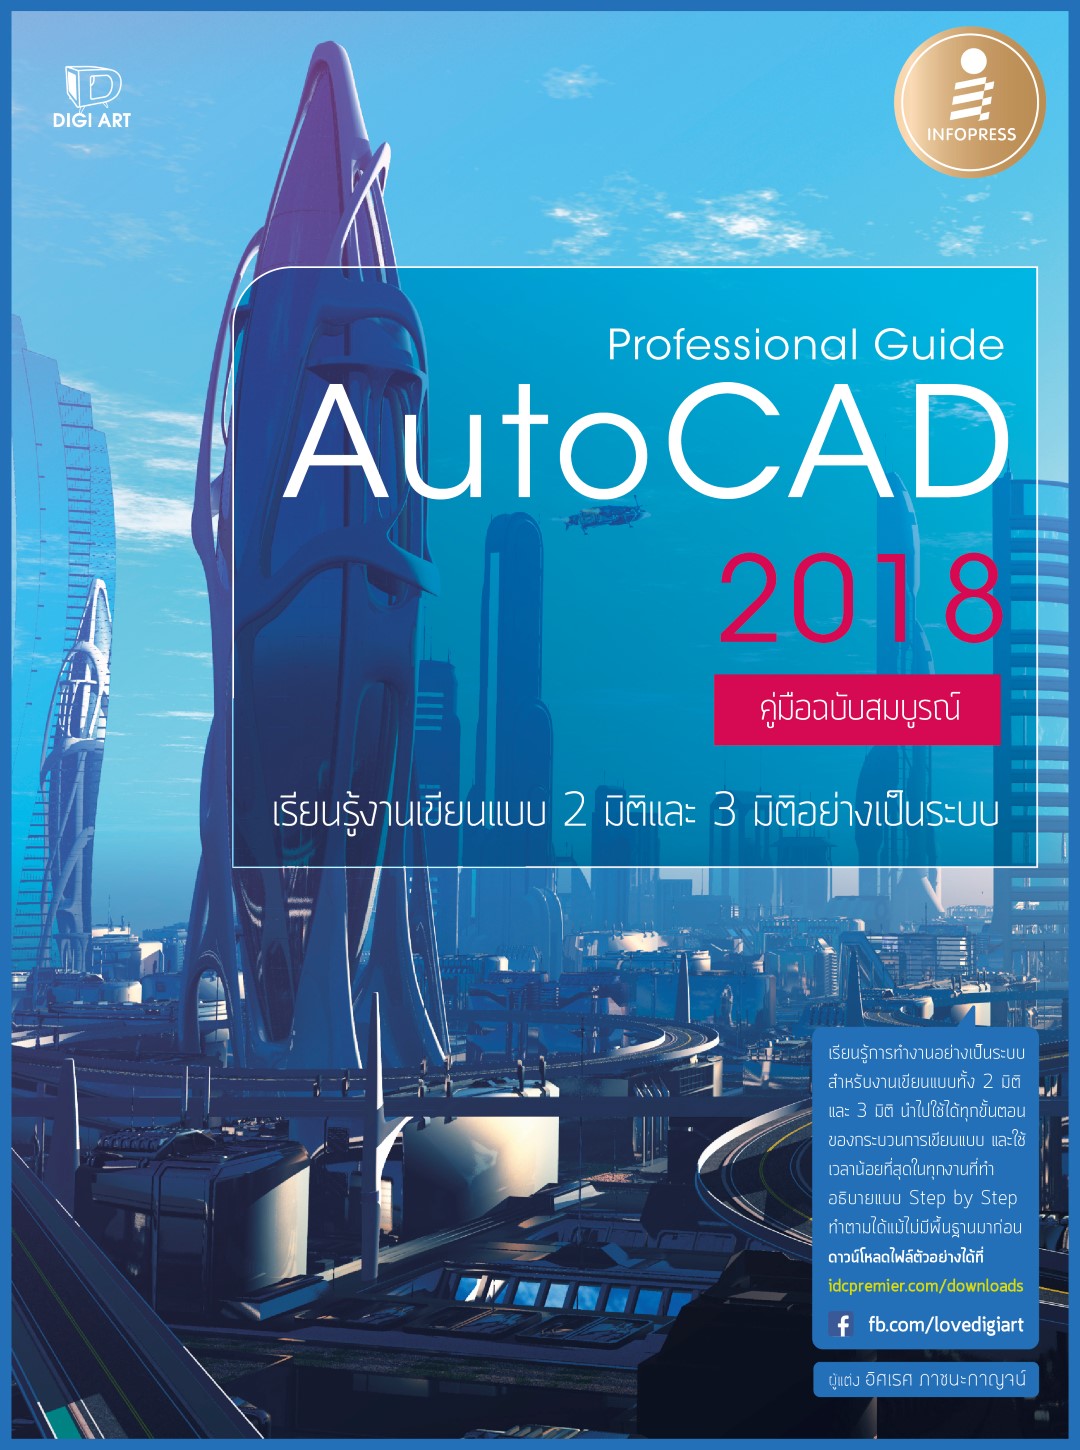 หนังสือ Professional Guide AutoCAD 2018 อิศเรศ ภาชนะกาญจน์